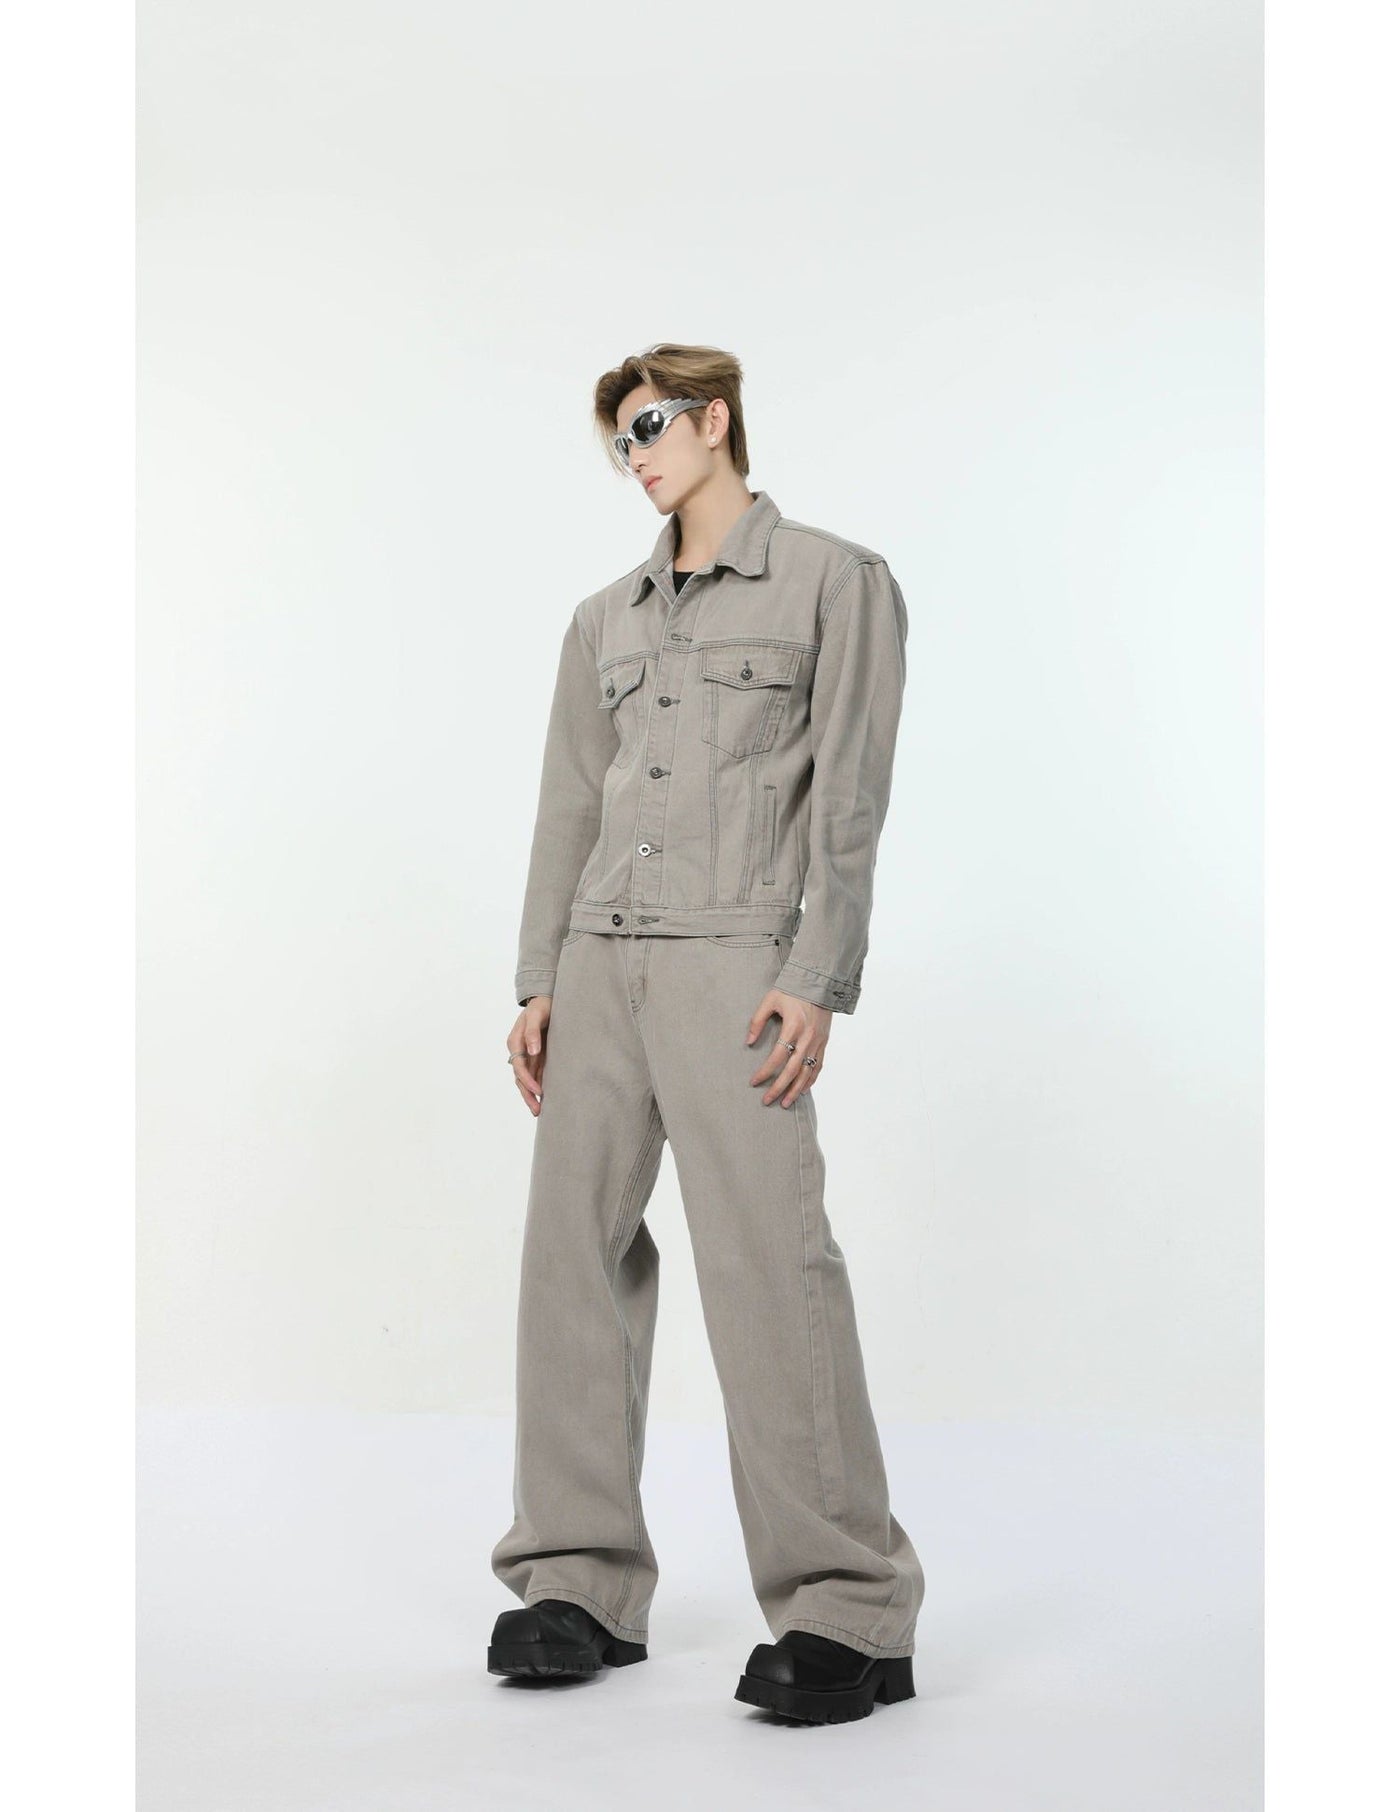 Regular Fit Versatile Denim Jacket & Jeans Set Korean Street Fashion Clothing Set By Turn Tide Shop Online at OH Vault